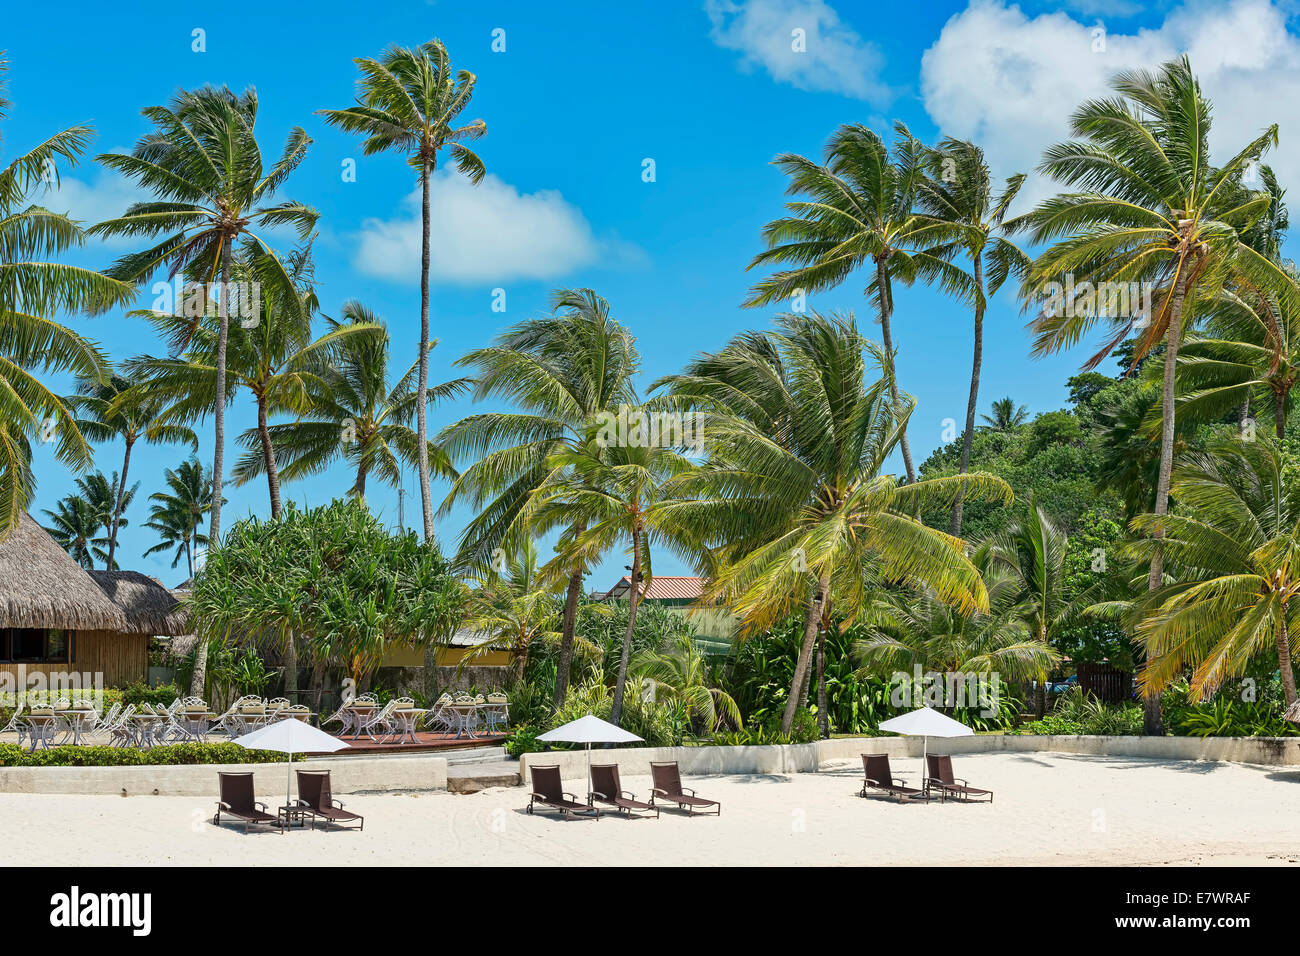 Beach with palm trees, Bora Bora, French Polynesia Stock Photo